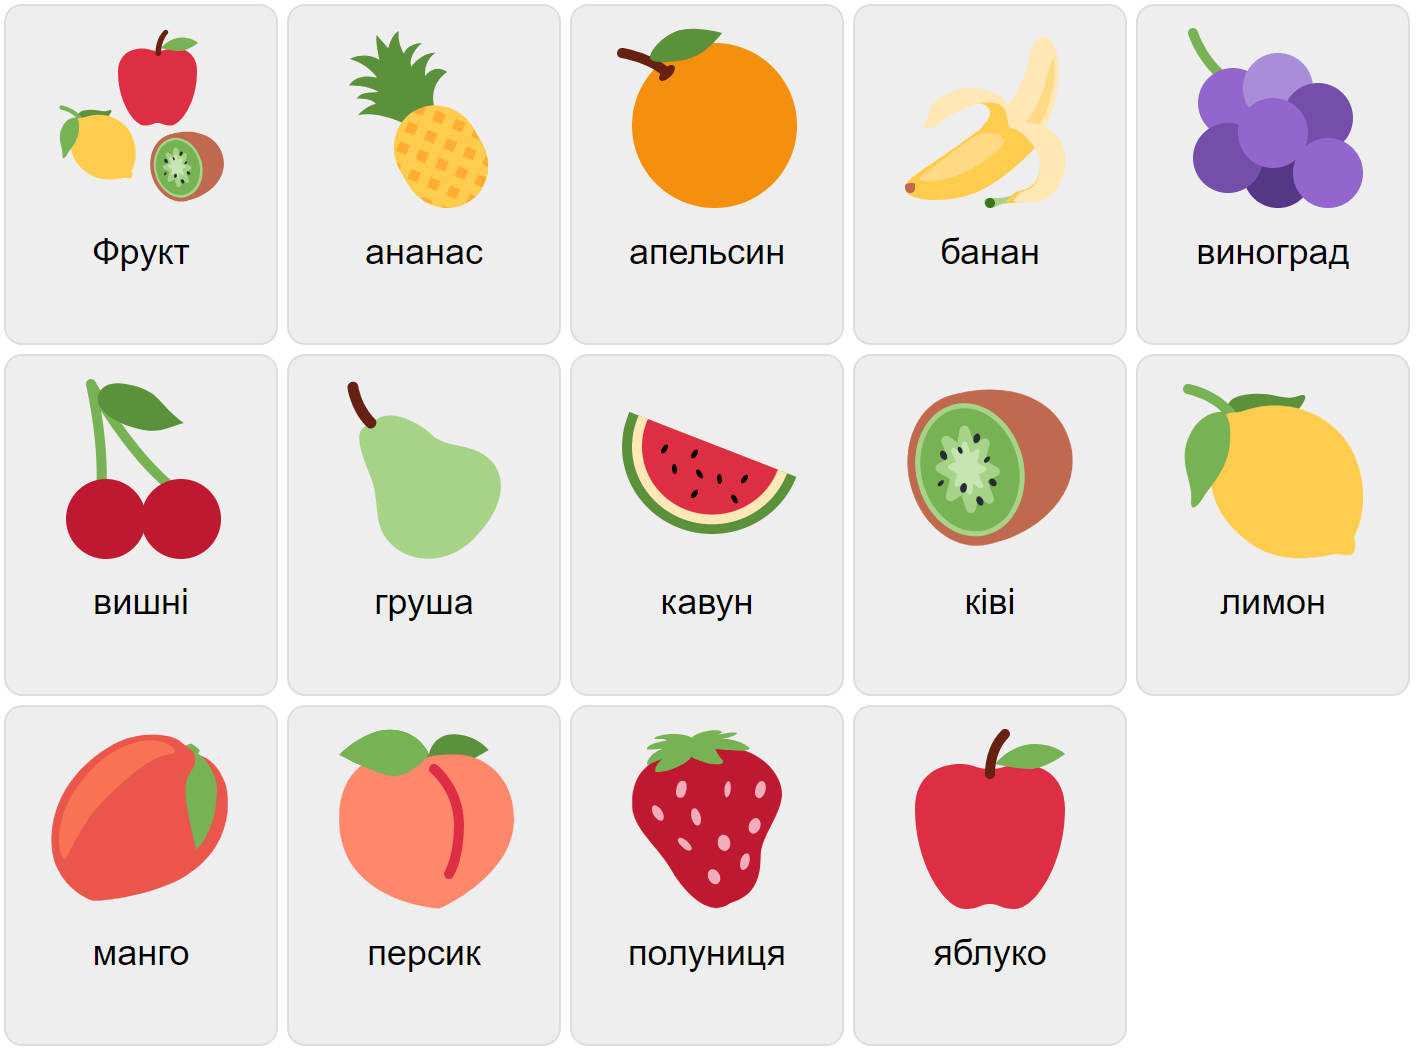 Fruits in Ukrainian